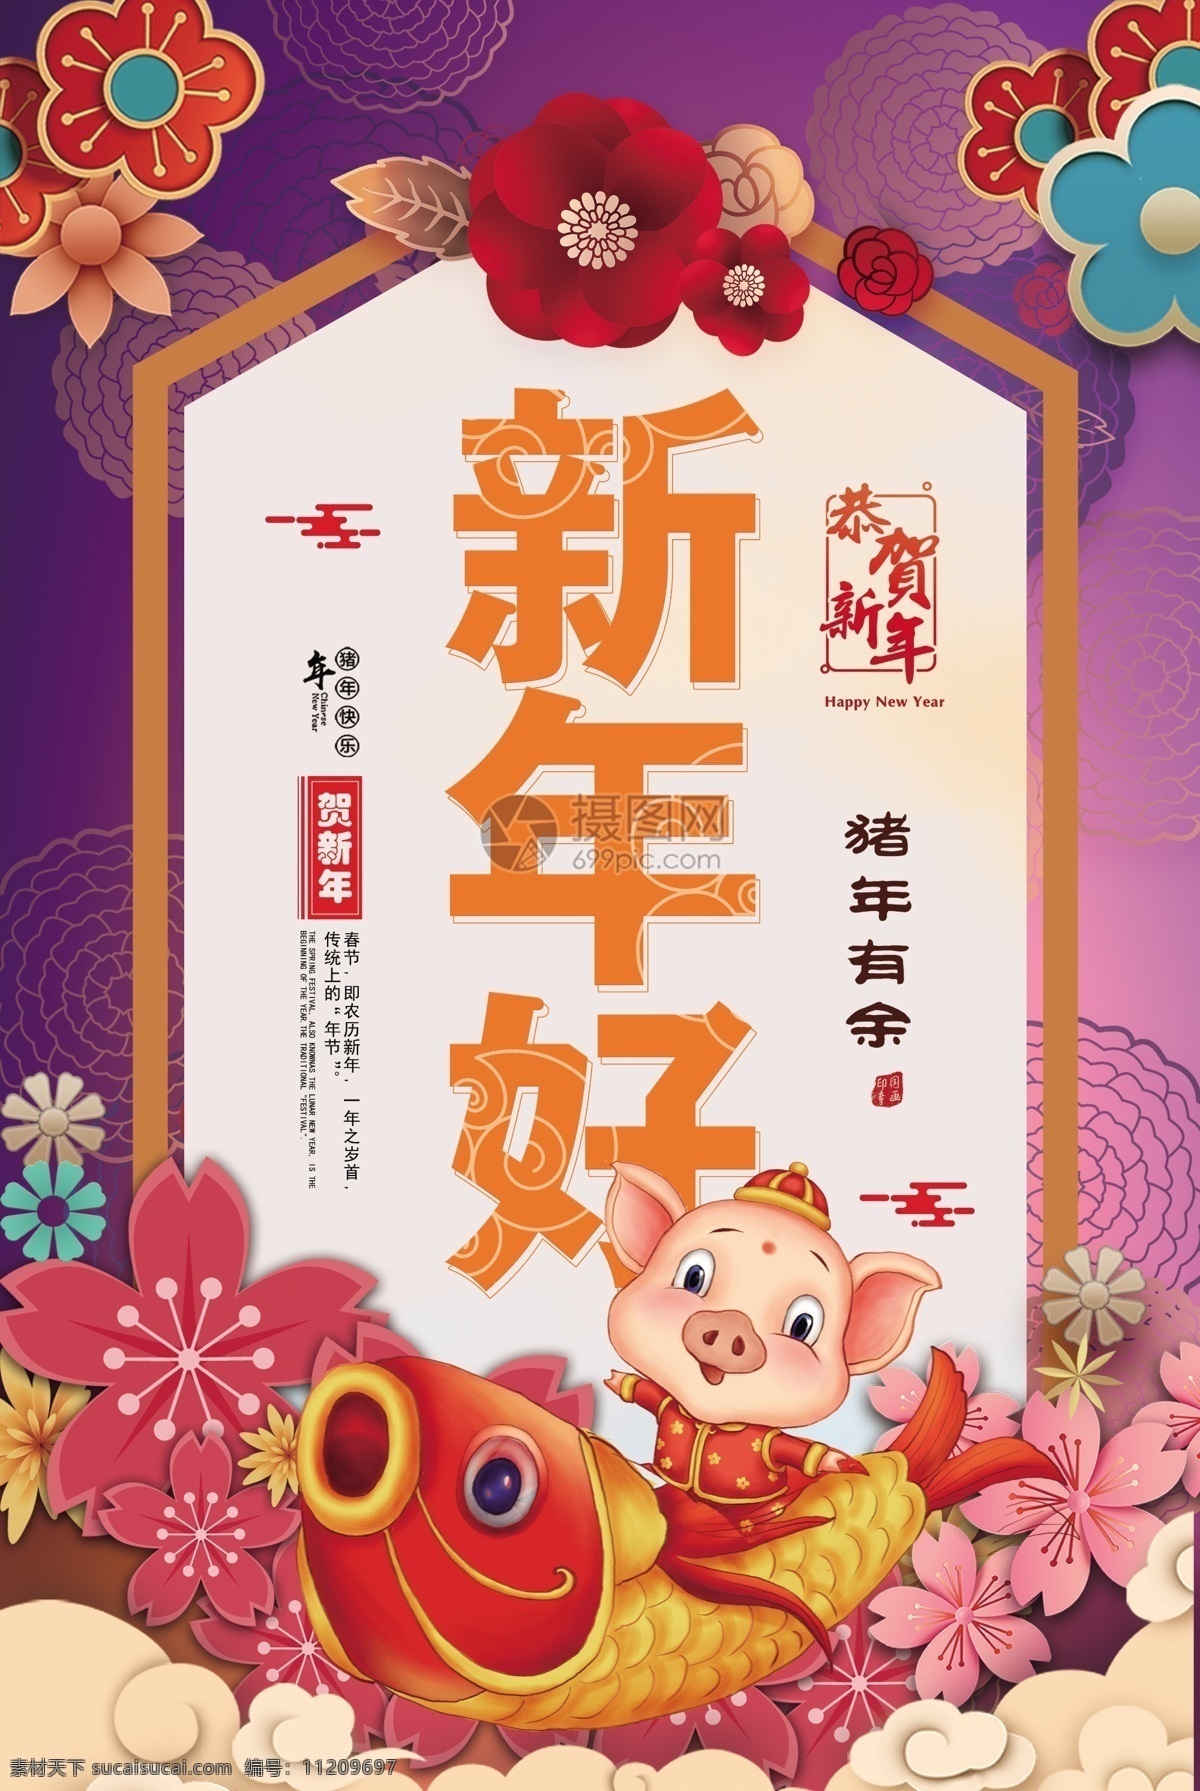 新年 好中 国风 猪年 有余 海报 中国风 花朵 锦鲤 好运猪 猪 新年好 年年有余 年年有鱼 新春 春节 2019